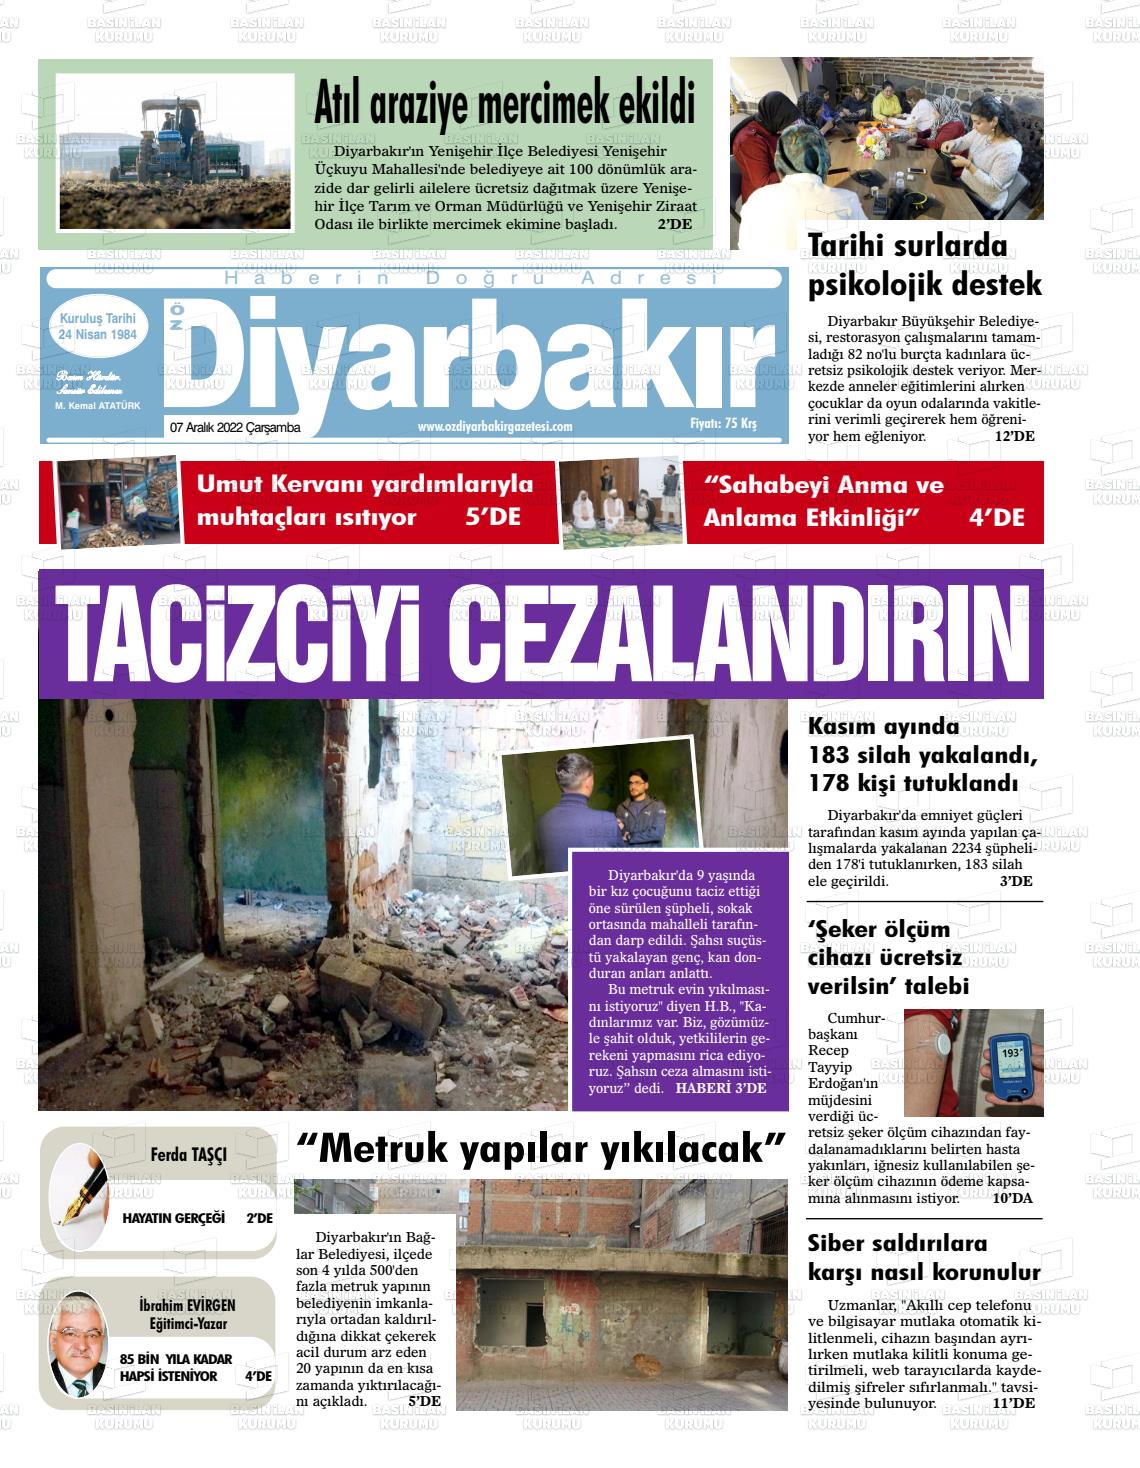 07 Aralık 2022 Öz Diyarbakir Gazete Gazete Manşeti